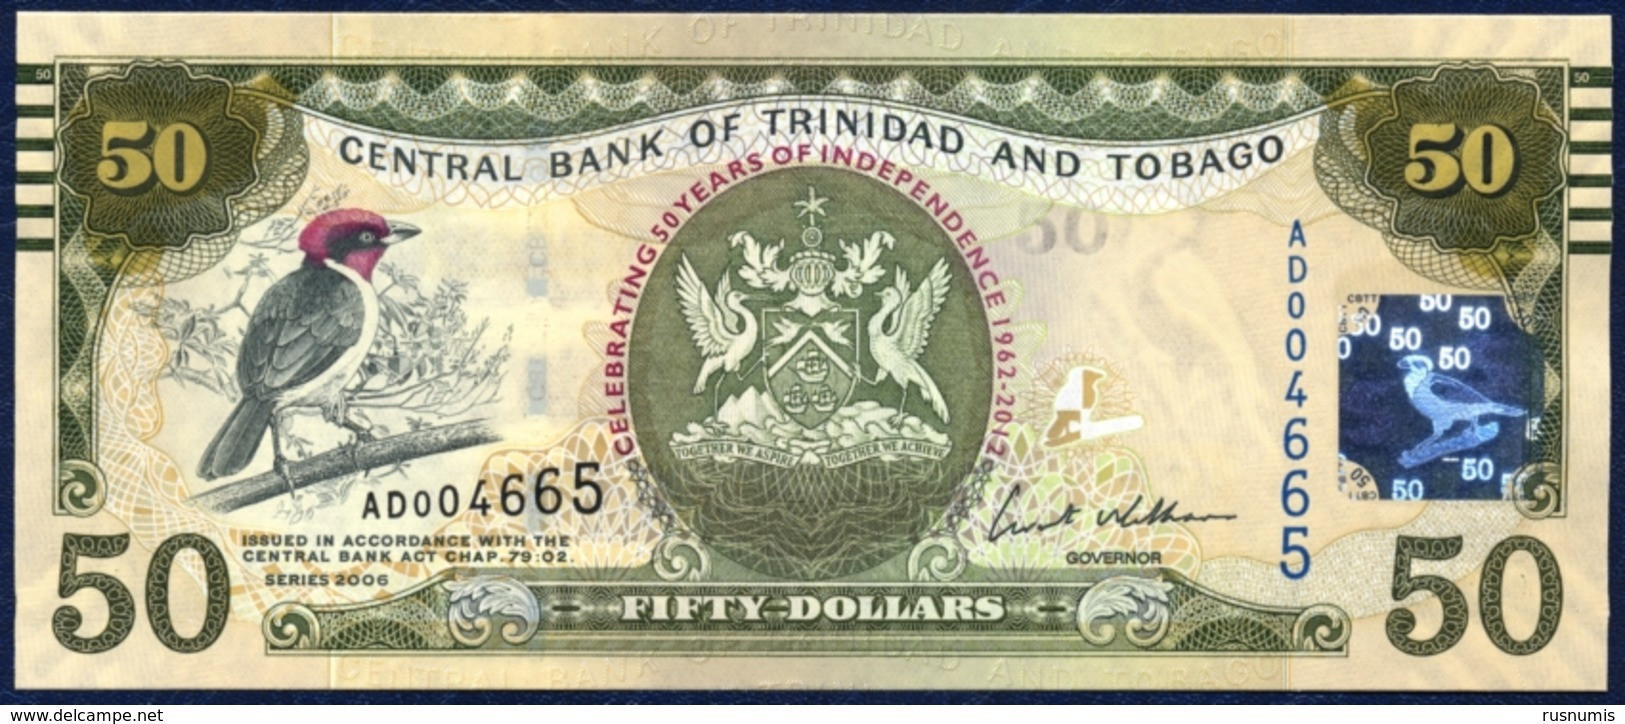 TRINIDAD AND TOBAGO 50 DOLLARS P-53 COMMEMORATIVE 50th ANNIVERSARY OF INDEPENDENCE CARDINAL BIRD  2006 / 2012 UNC - Trinidad Y Tobago